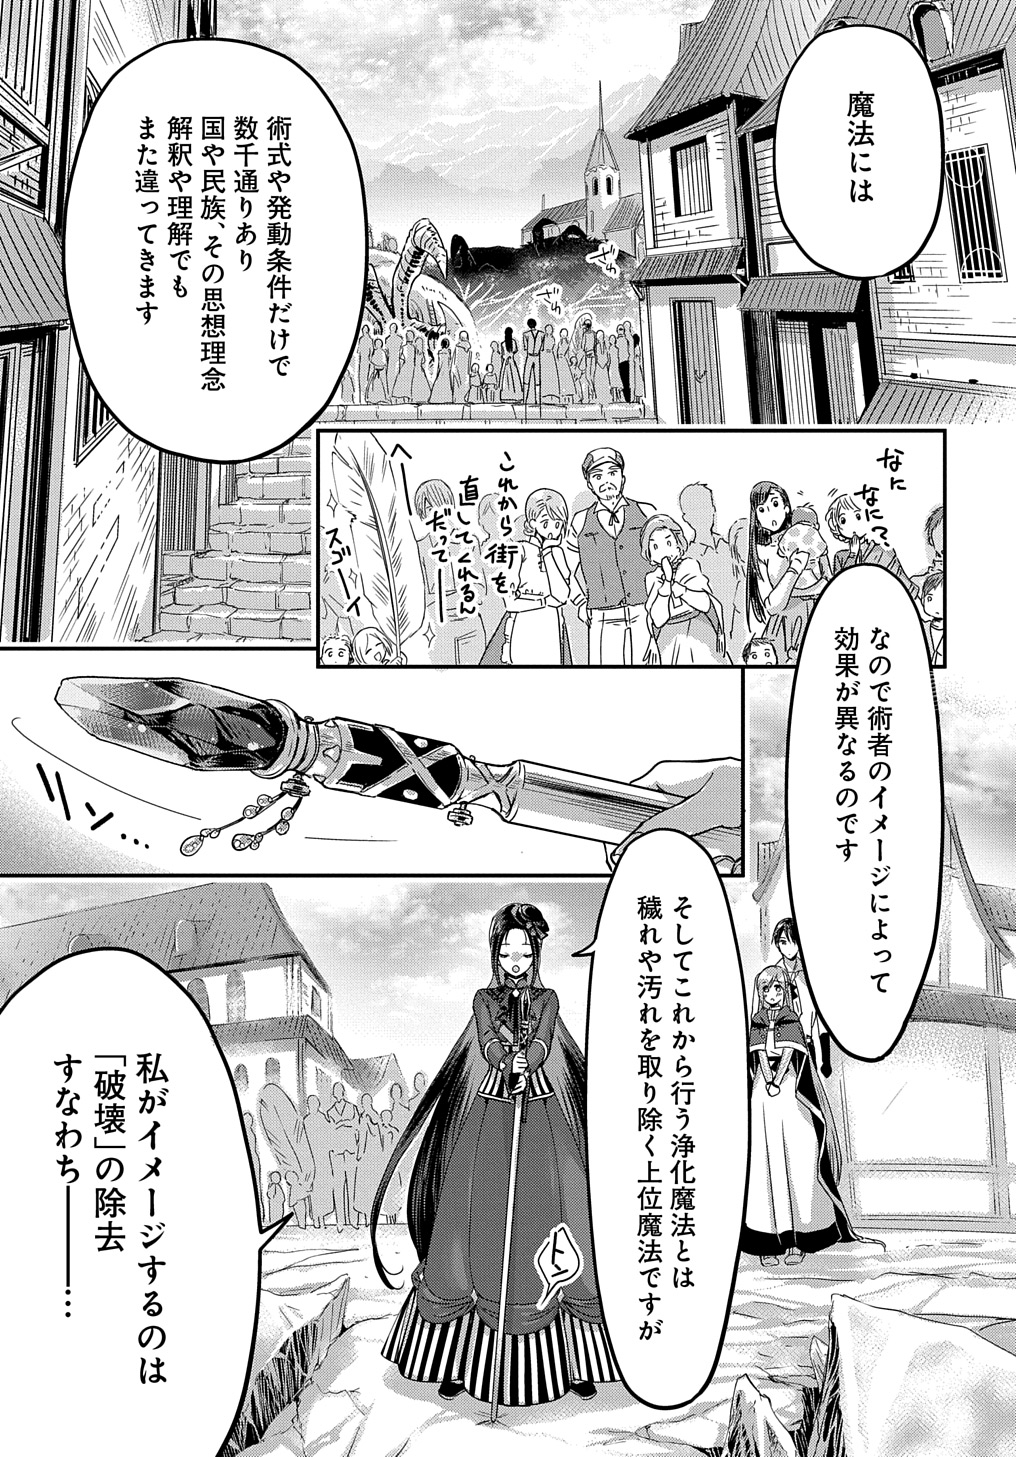 Konyakusha no Uwaki Genba wo Michatta no de Hajimari no Kane ga narimashita - Chapter 10 - Page 1